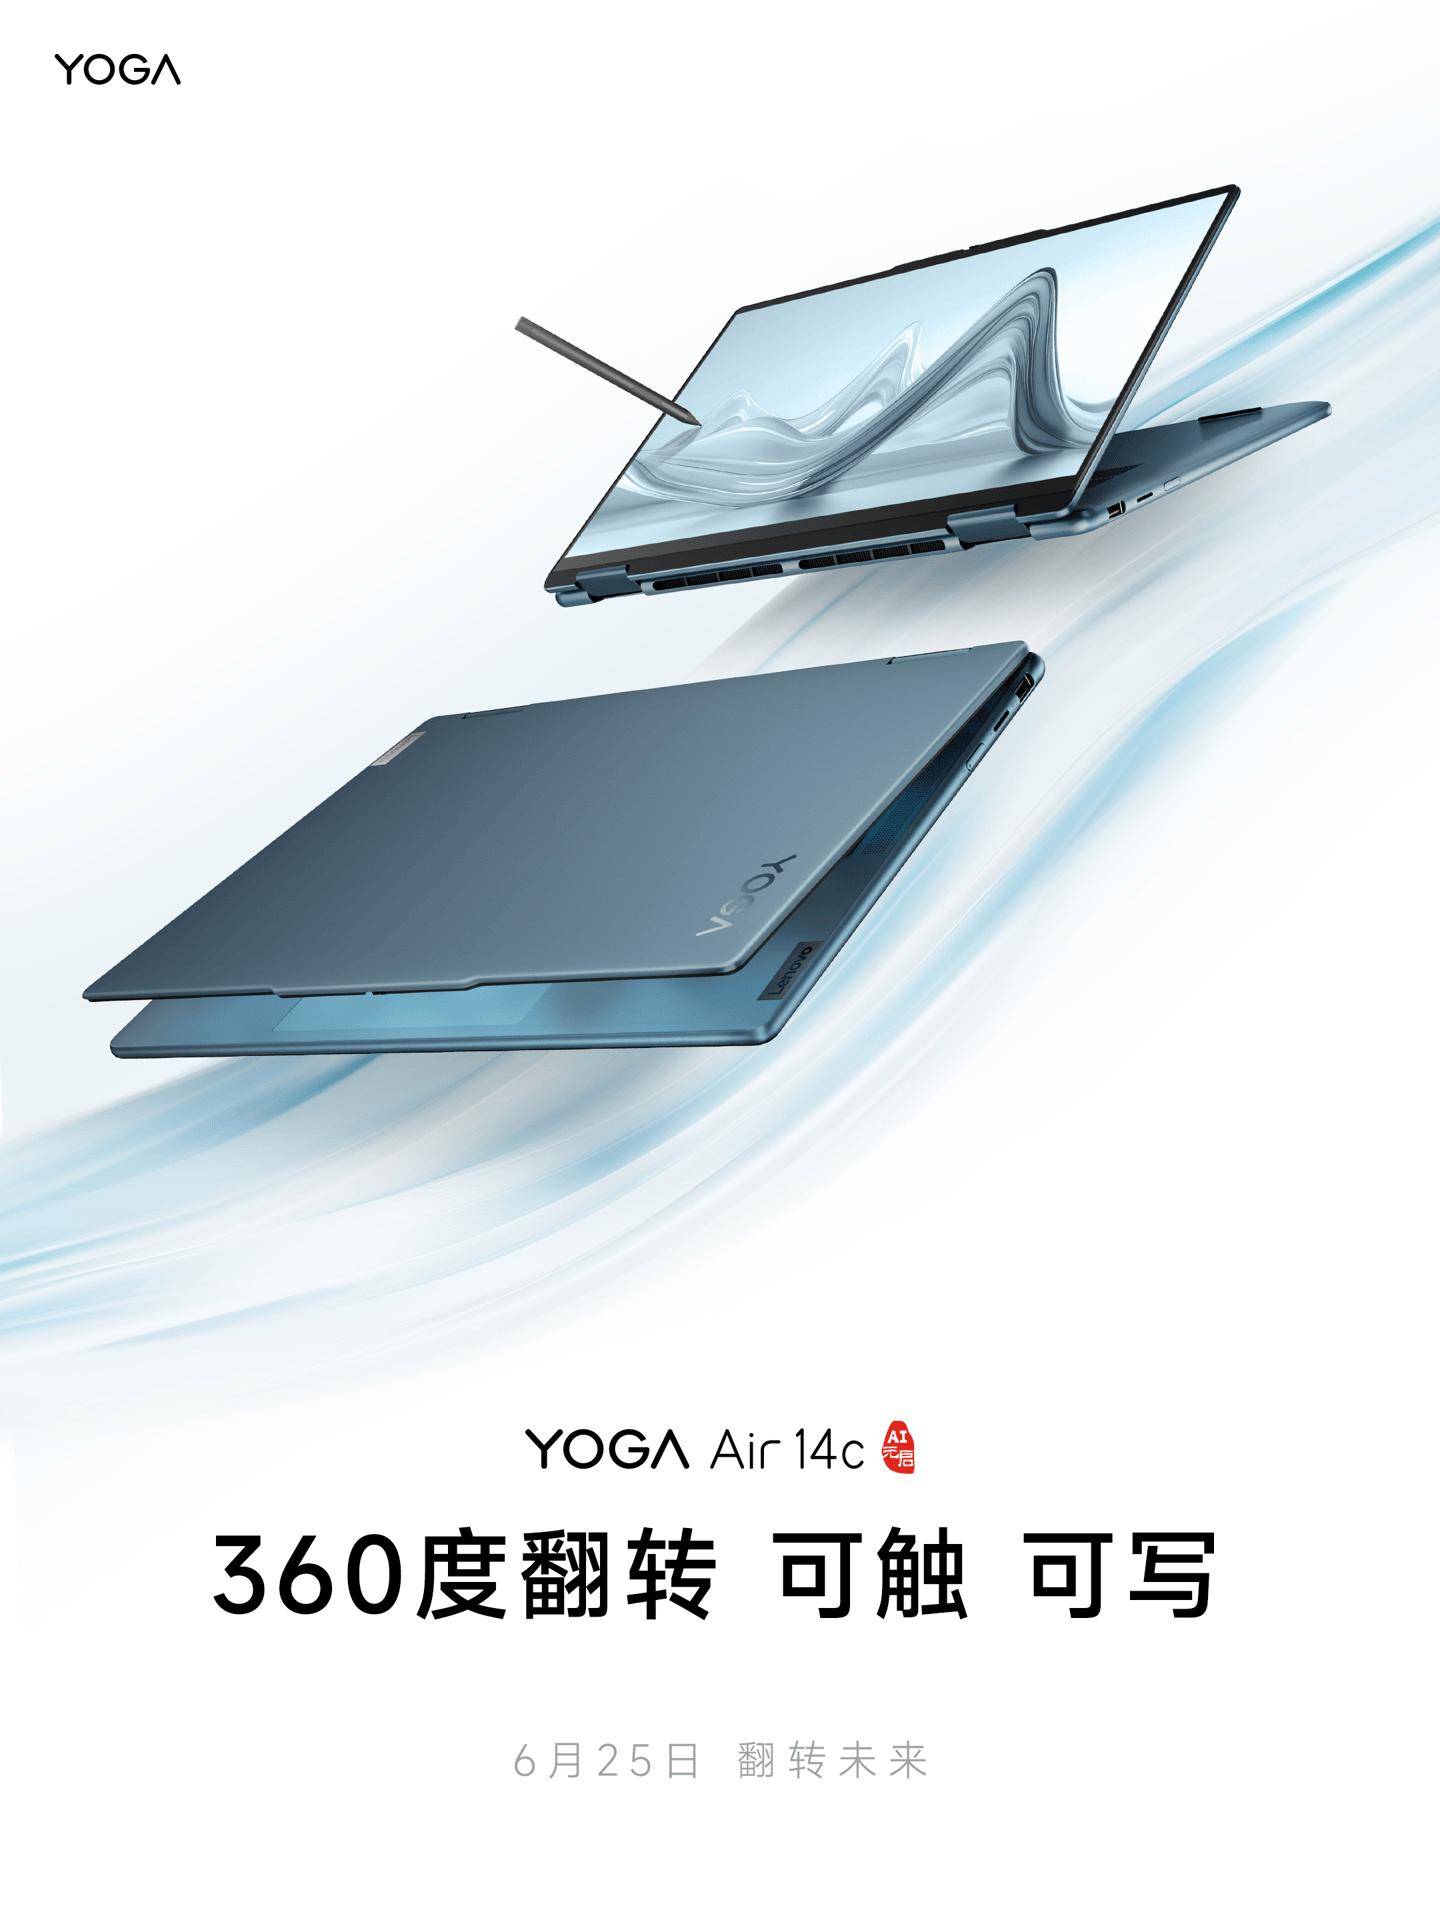 联想YOGA Air 14c 360°翻转笔记本6月25日发布 支持4096级压感手写